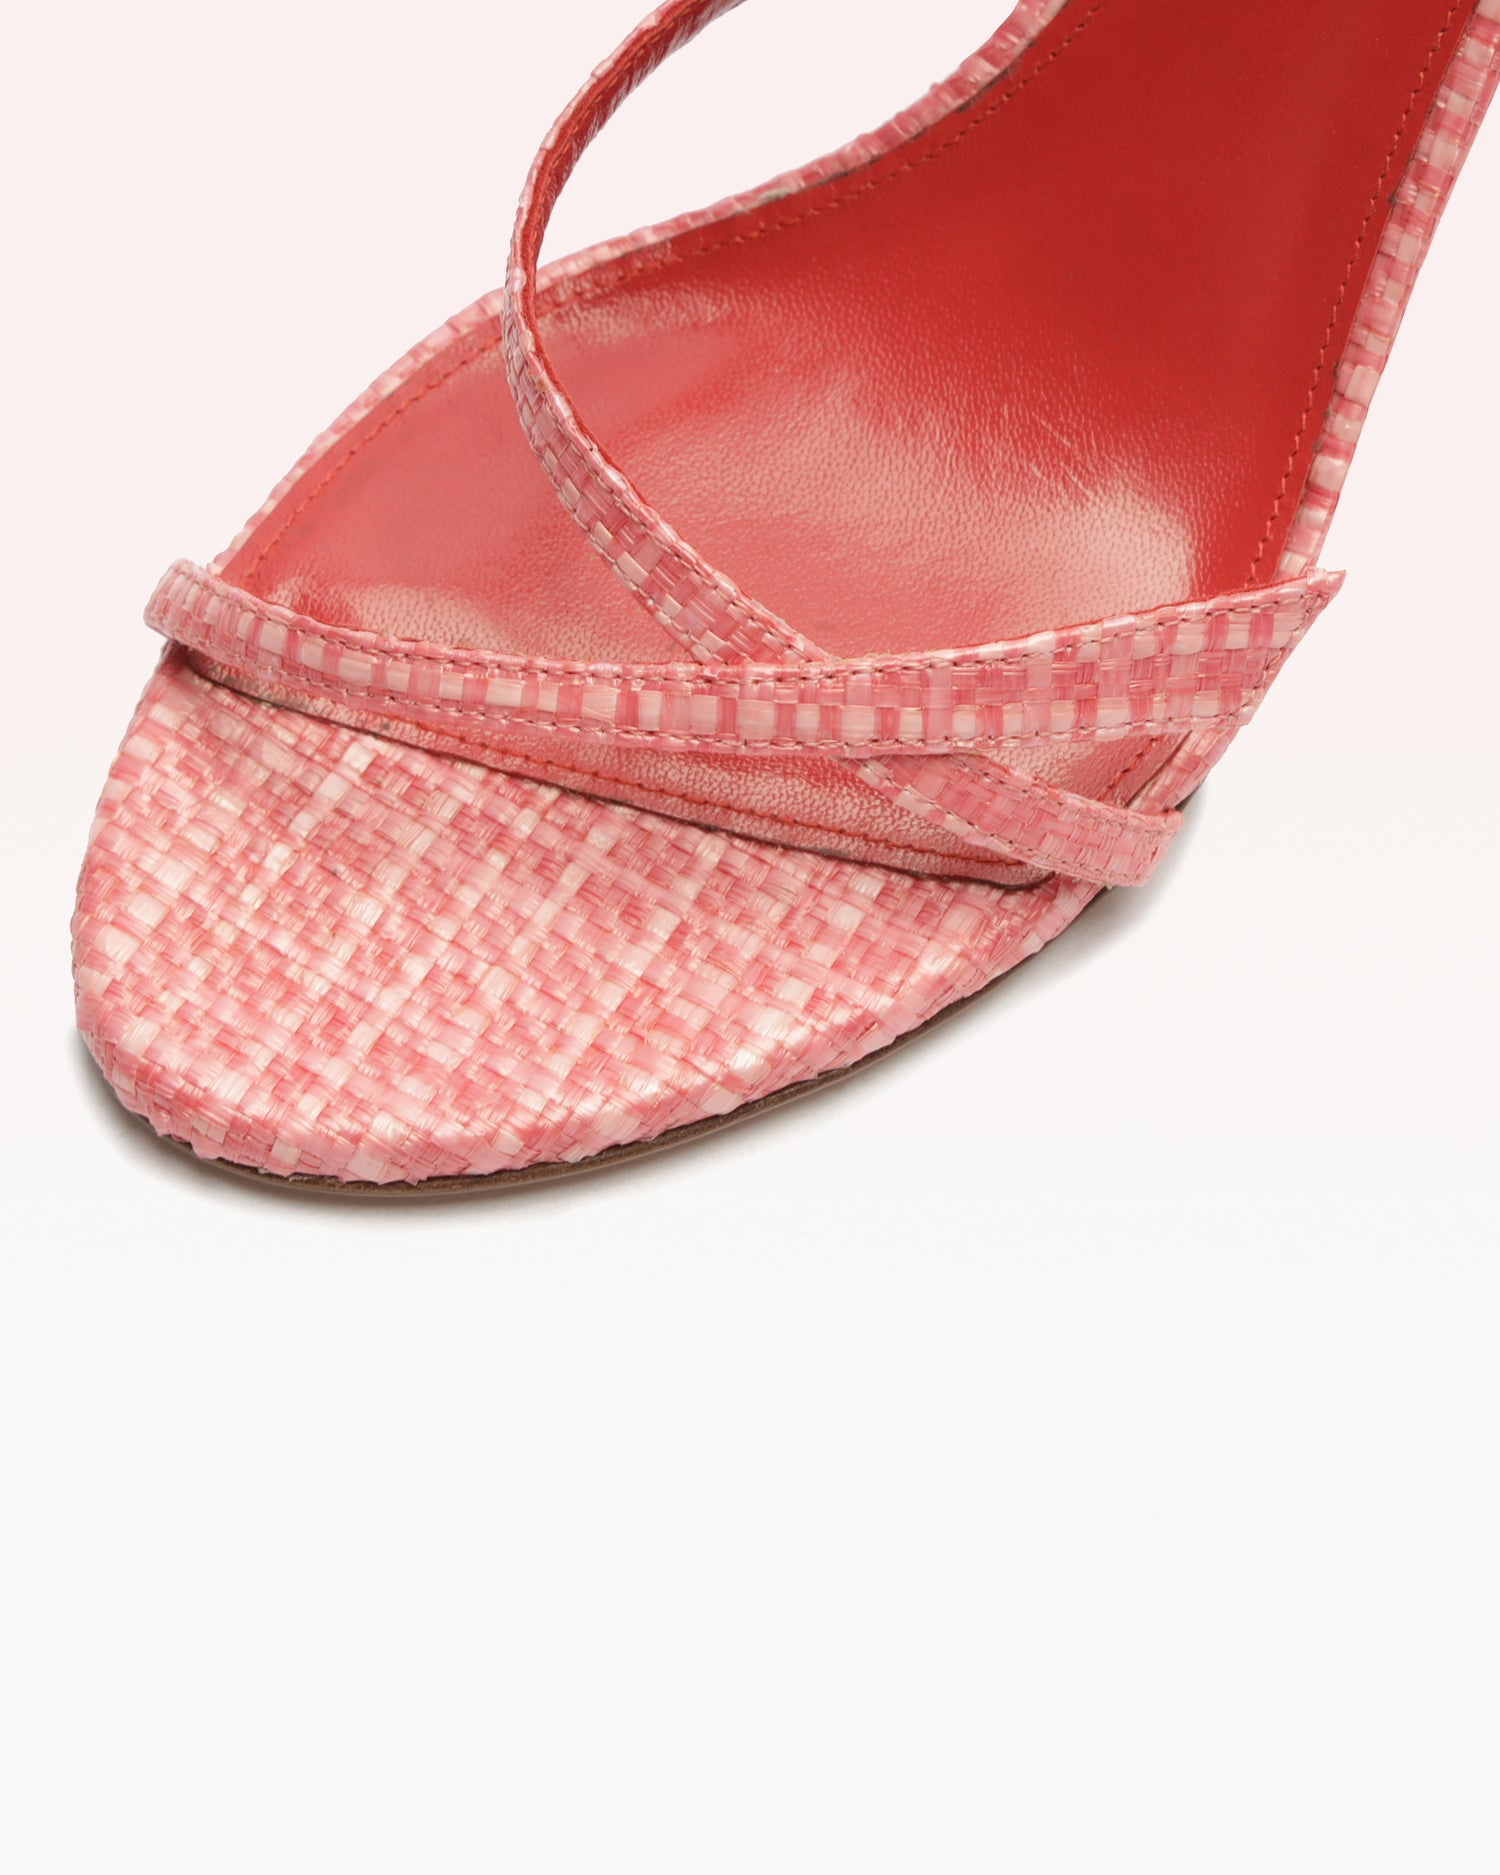 Tita Bell 85 Pink Sandals S/24   